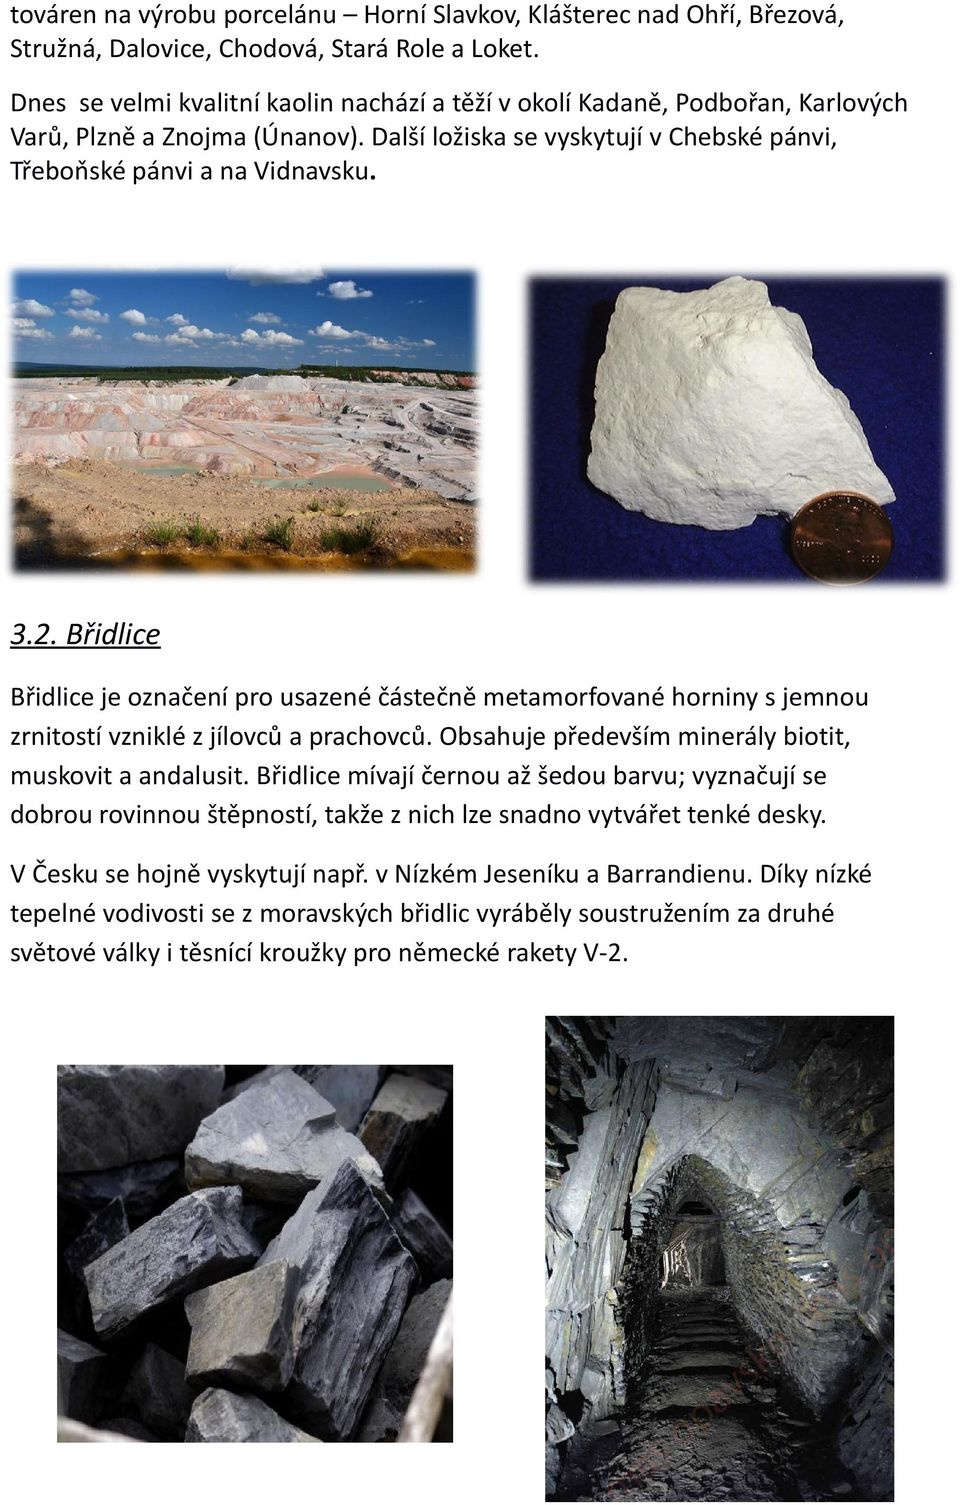 Břidlice Břidlice je označení pro usazené částečně metamorfované horniny s jemnou zrnitostí vzniklé z jílovců a prachovců. Obsahuje především minerály biotit, muskovit a andalusit.